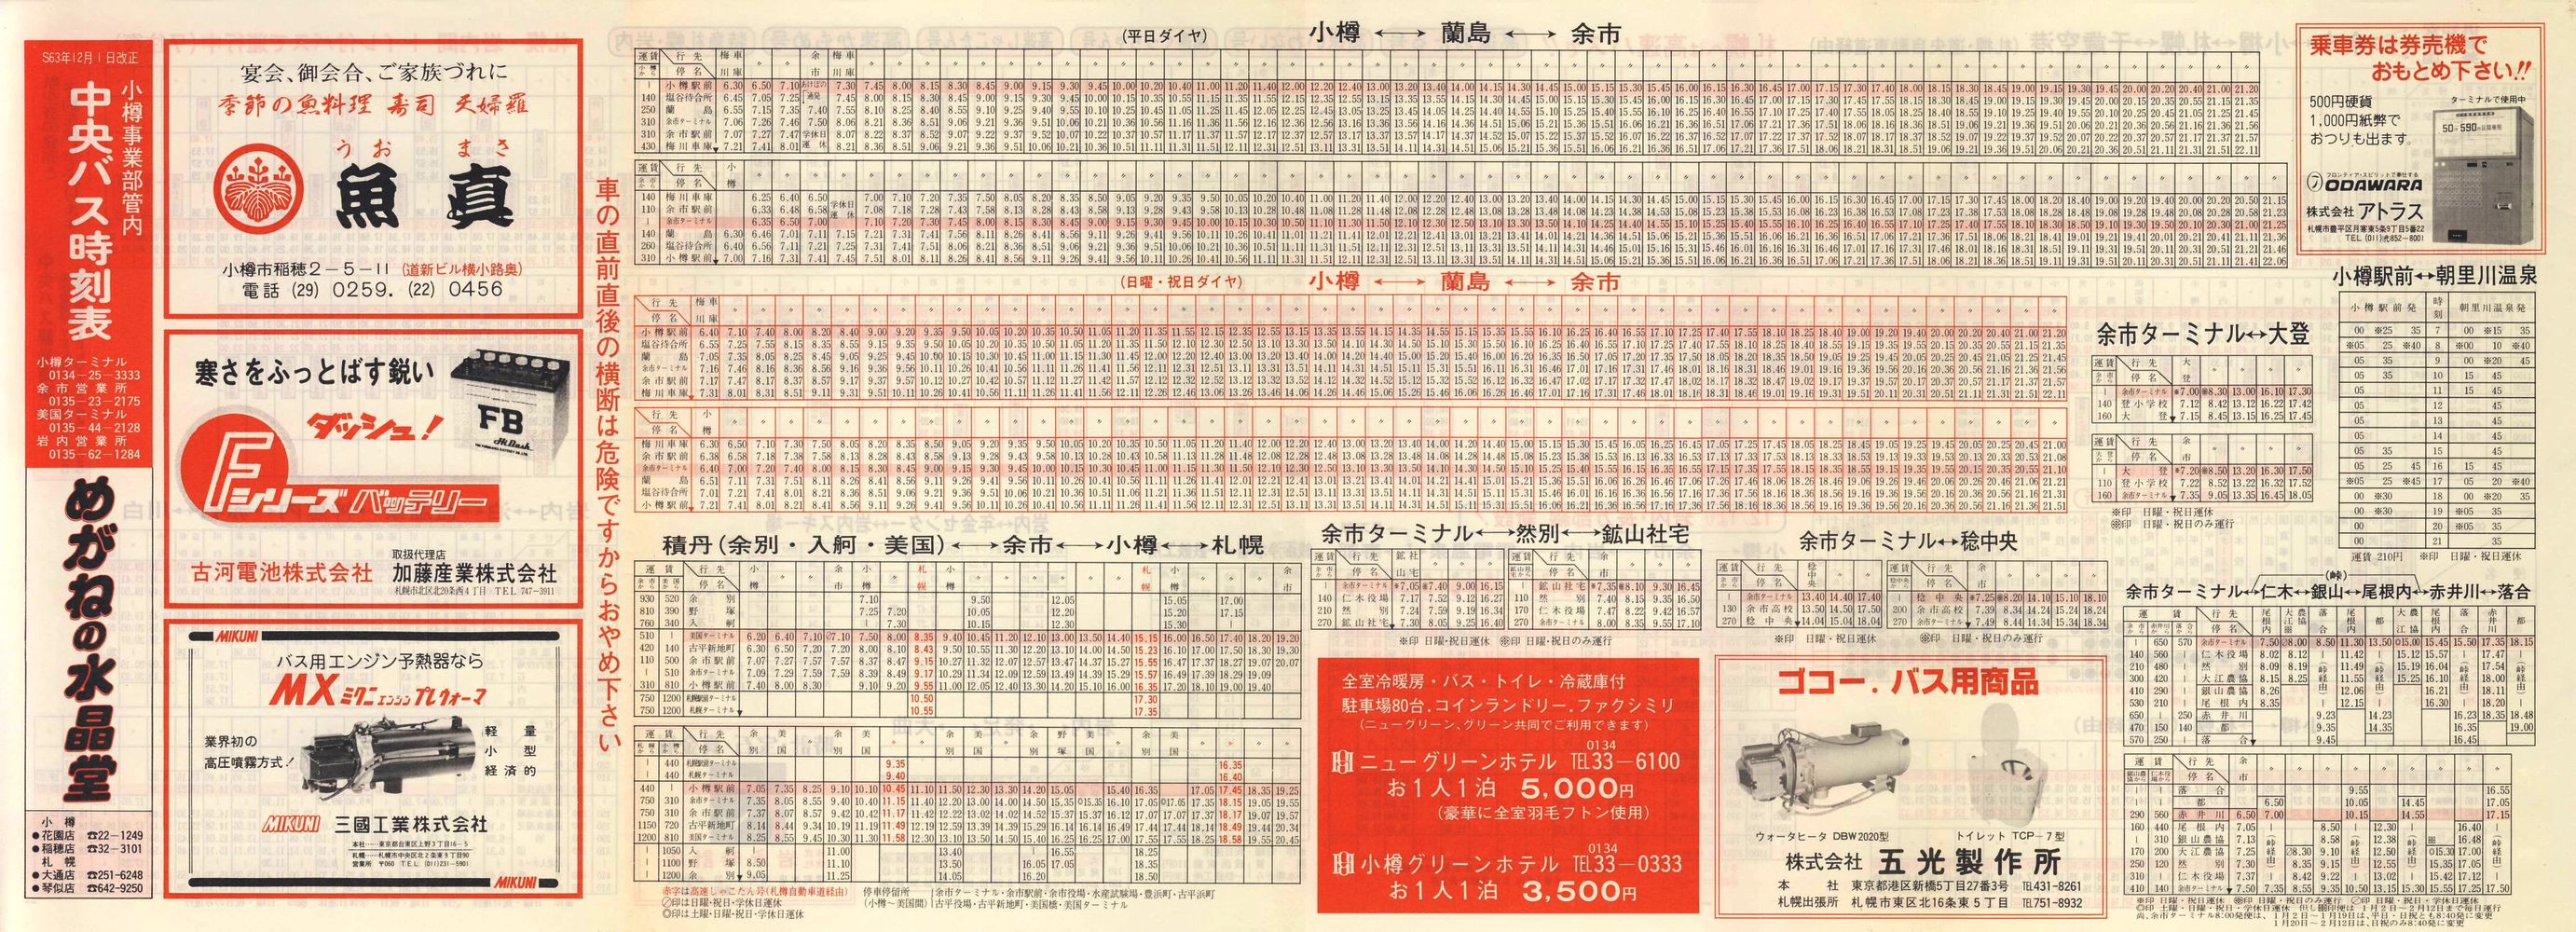 1988-12-01改正_北海道中央バス(小樽)_小樽事業部管内郊外線時刻表表面